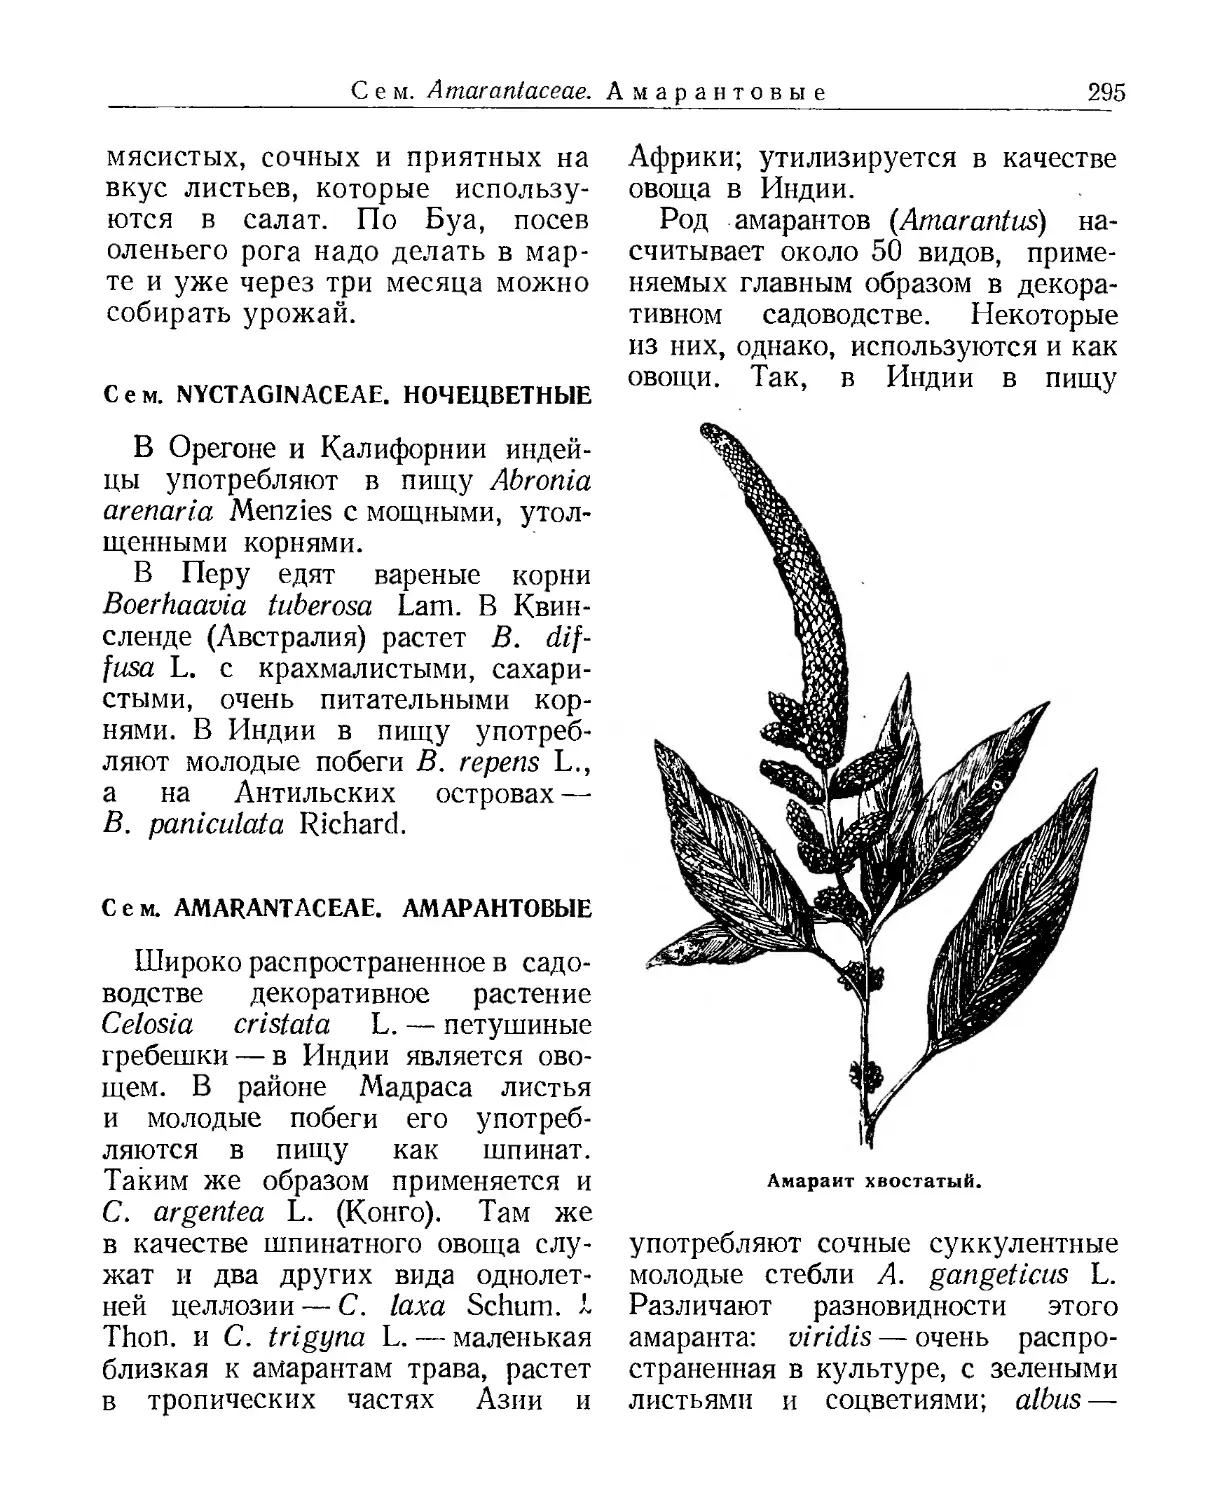 Сем. Nyctaginaceae. Ночецветные
Сем. Amarantaceae. Амарантовые